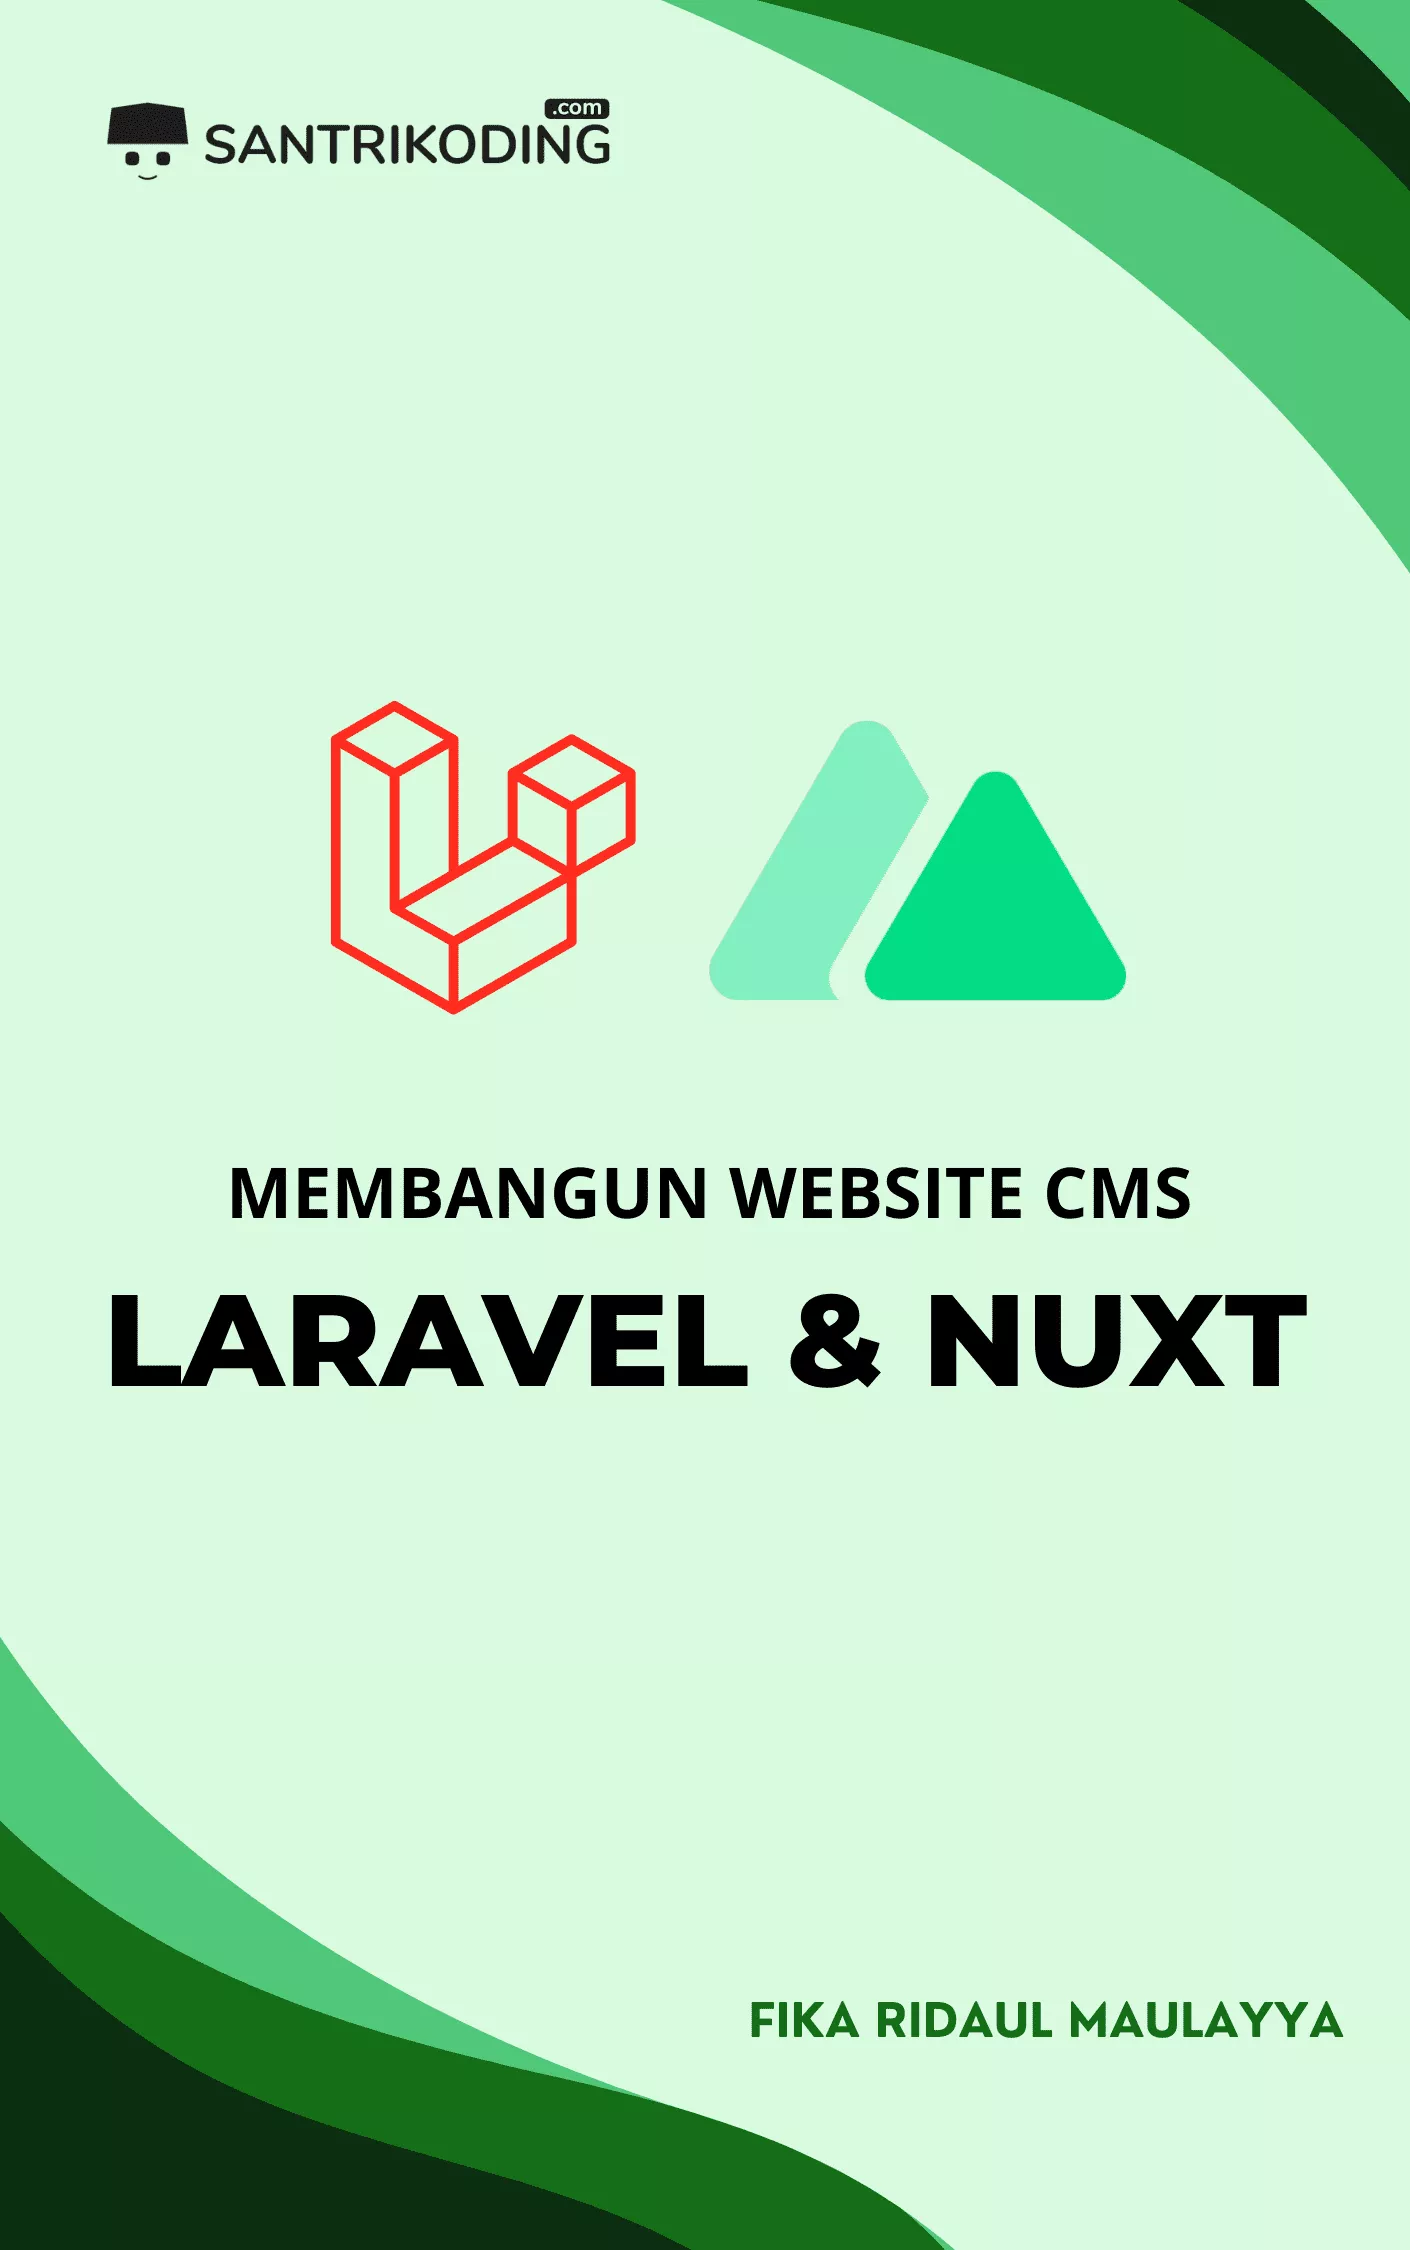 Membangun Website CMS Dengan Laravel dan Nuxt Js